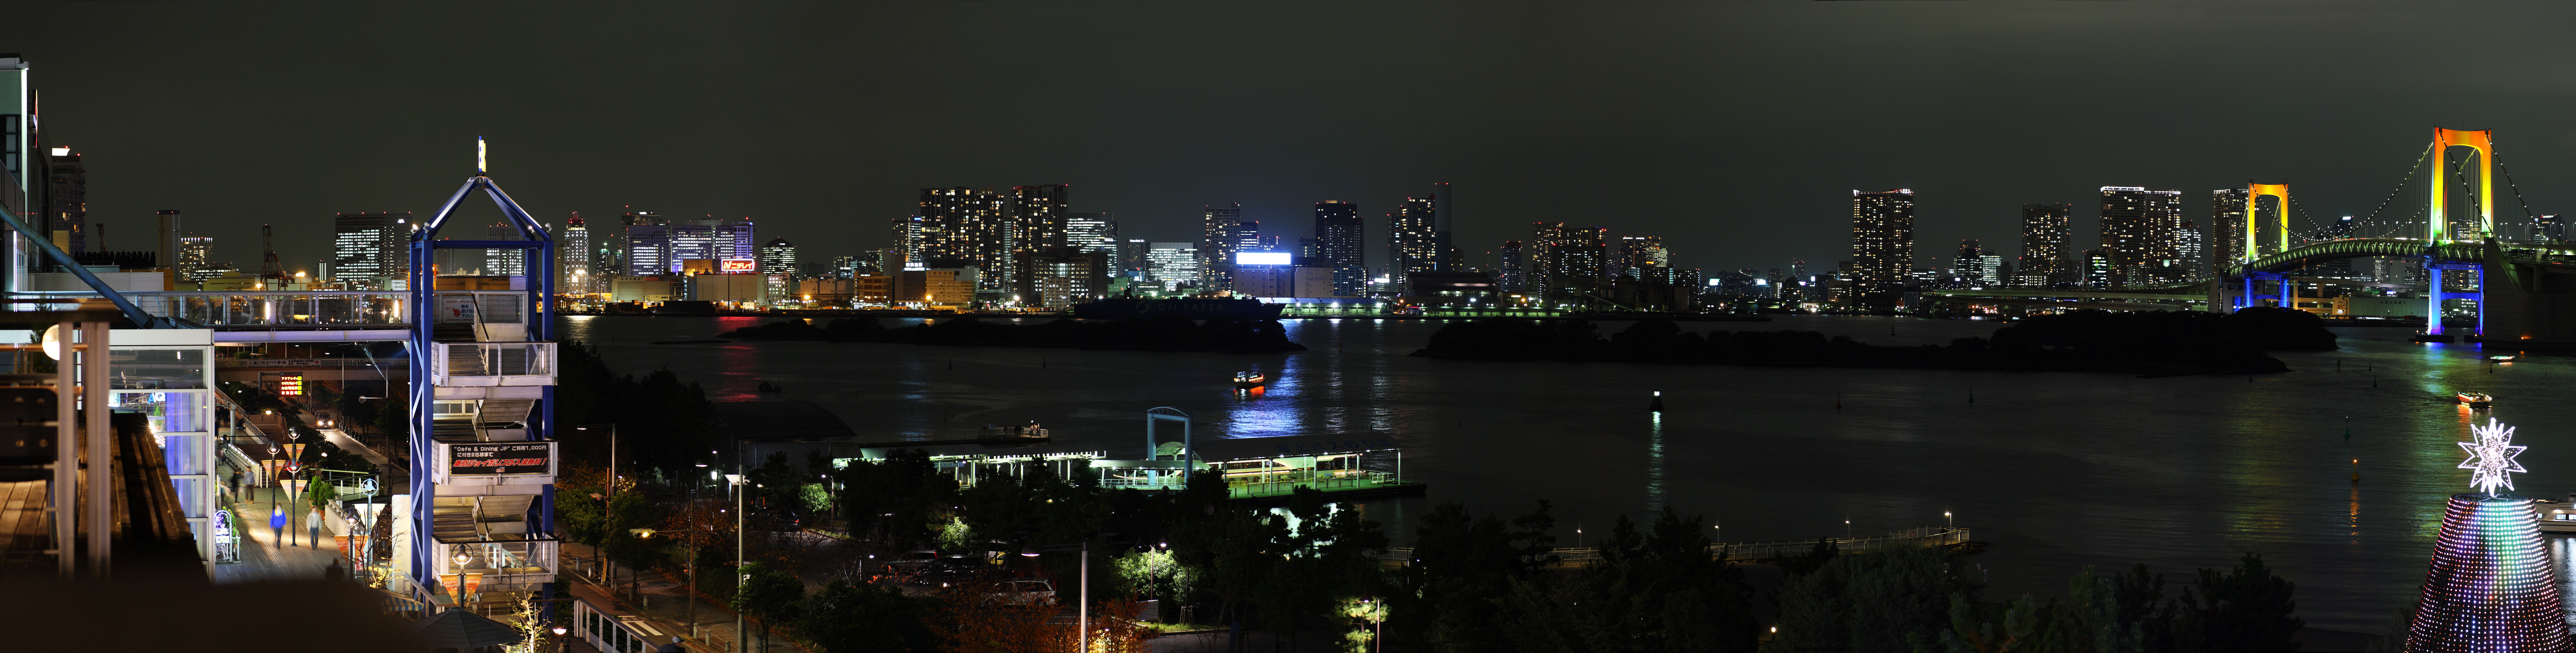 foto,tela,gratis,paisaje,fotografa,idea,Una vista de noche de Odaiba, Puente, Joya, Curso de fecha, Playa centro de la ciudad recin creado